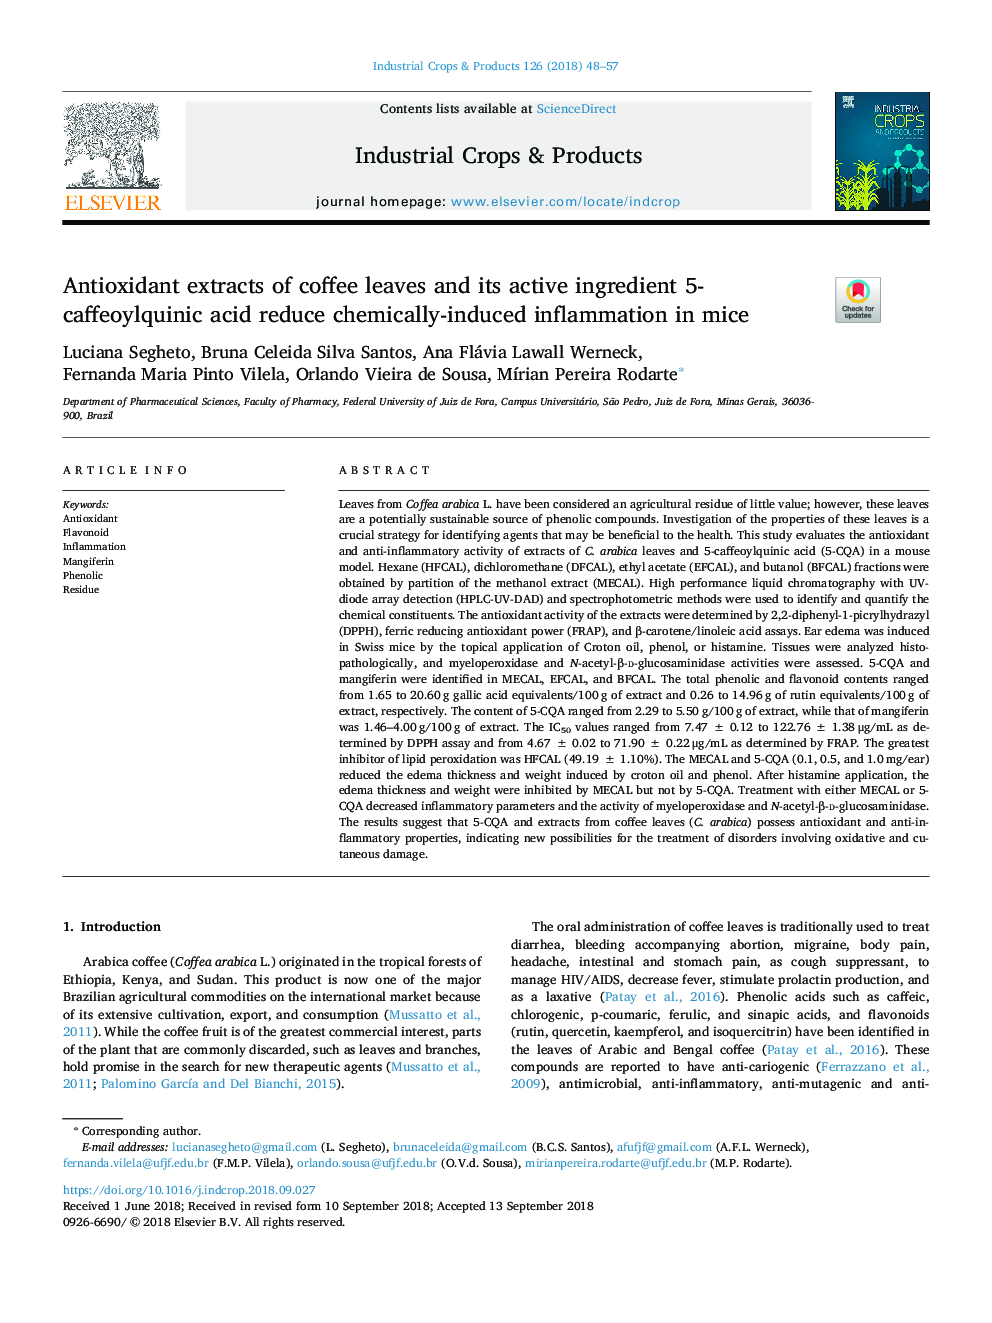 عصاره های آنتی اکسیدان از برگ های قهوه و ماده فعال آن 5-کافئویلیکینیک اسید باعث کاهش التهاب ناشی از شیمی در موش می شود